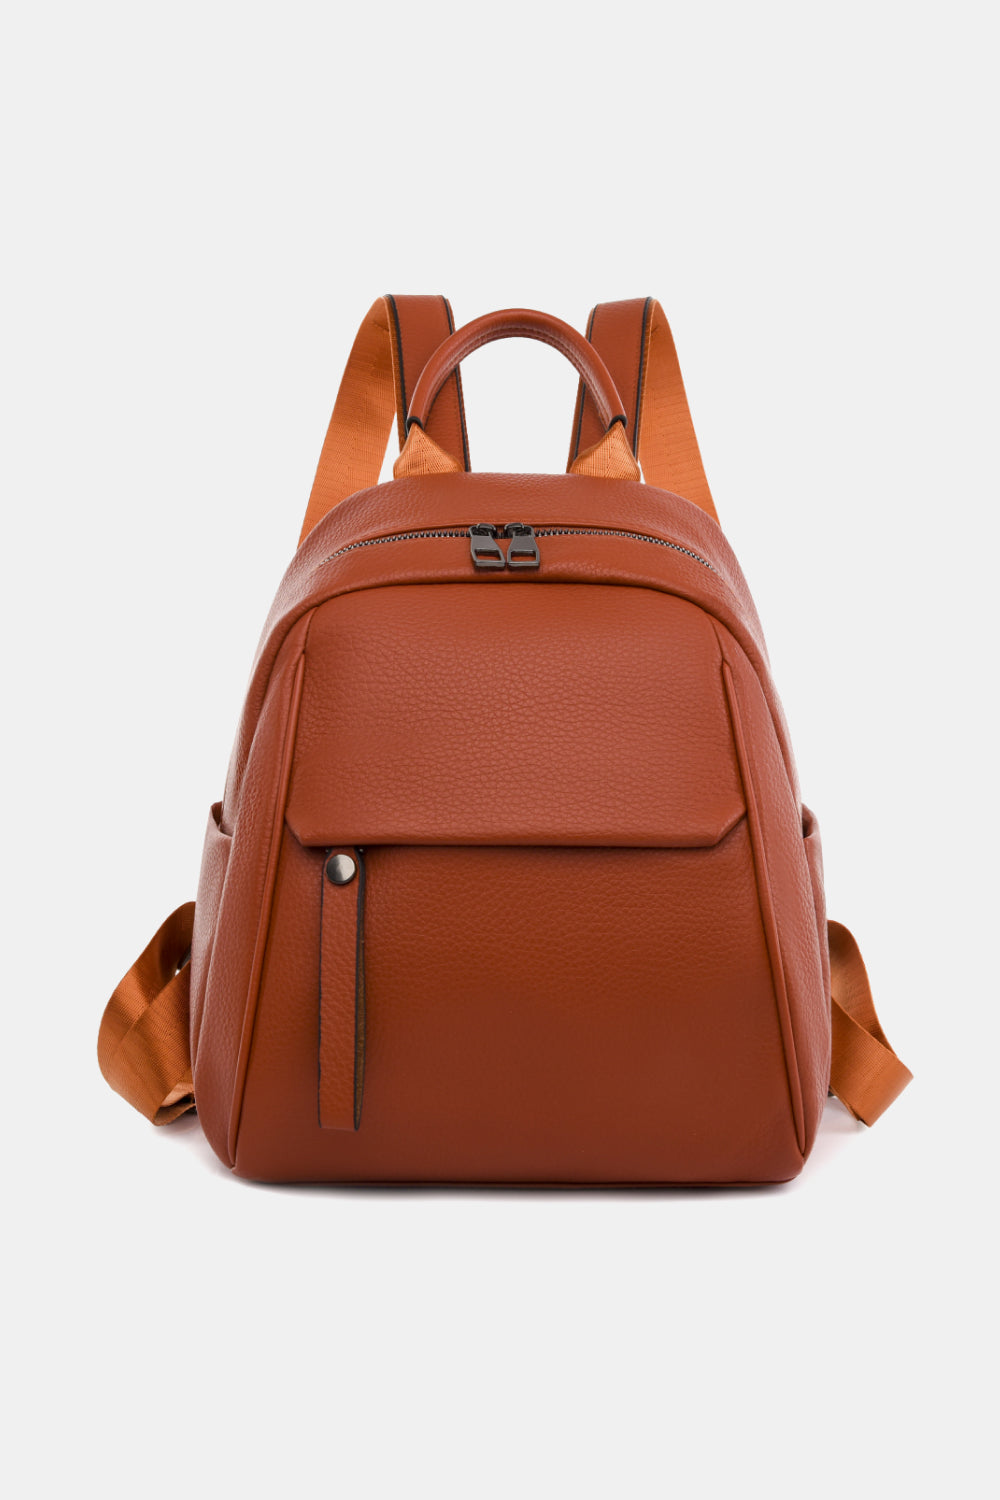 Sienna Medium PU Leather Backpack Handbags